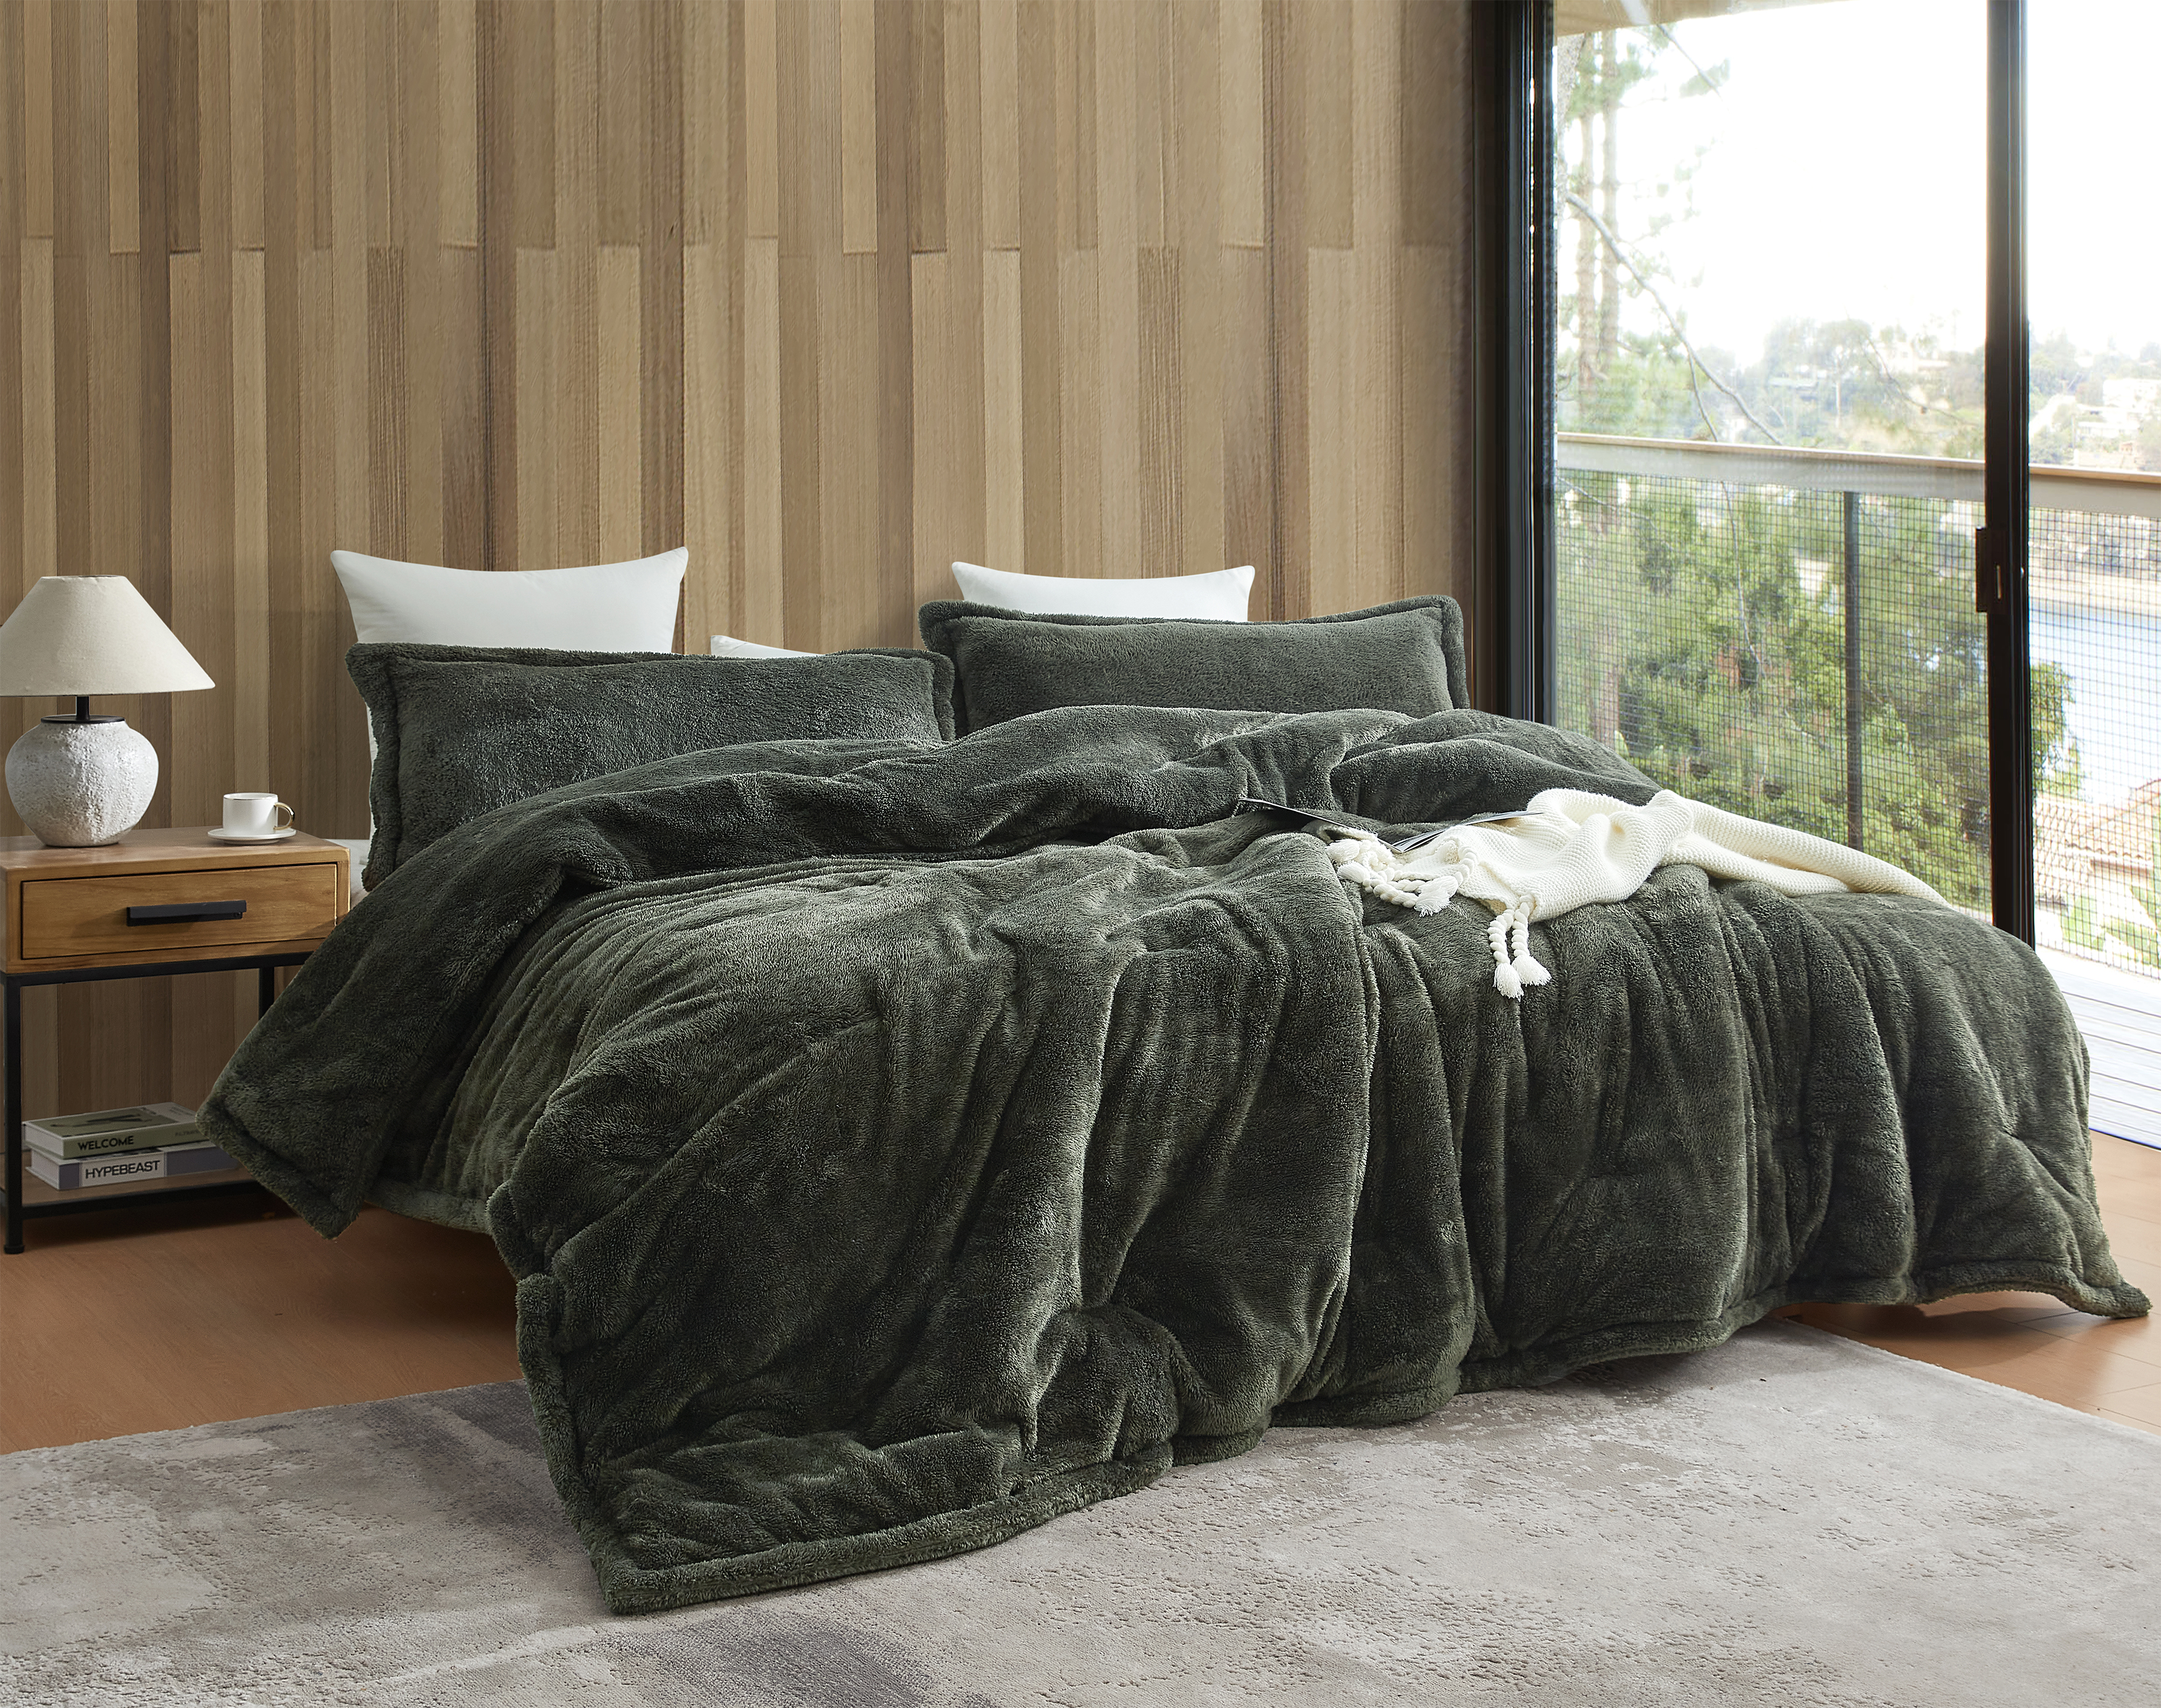 True Oversized King Bedding Essentials Dark Forest Green Coma Inducer Blanket